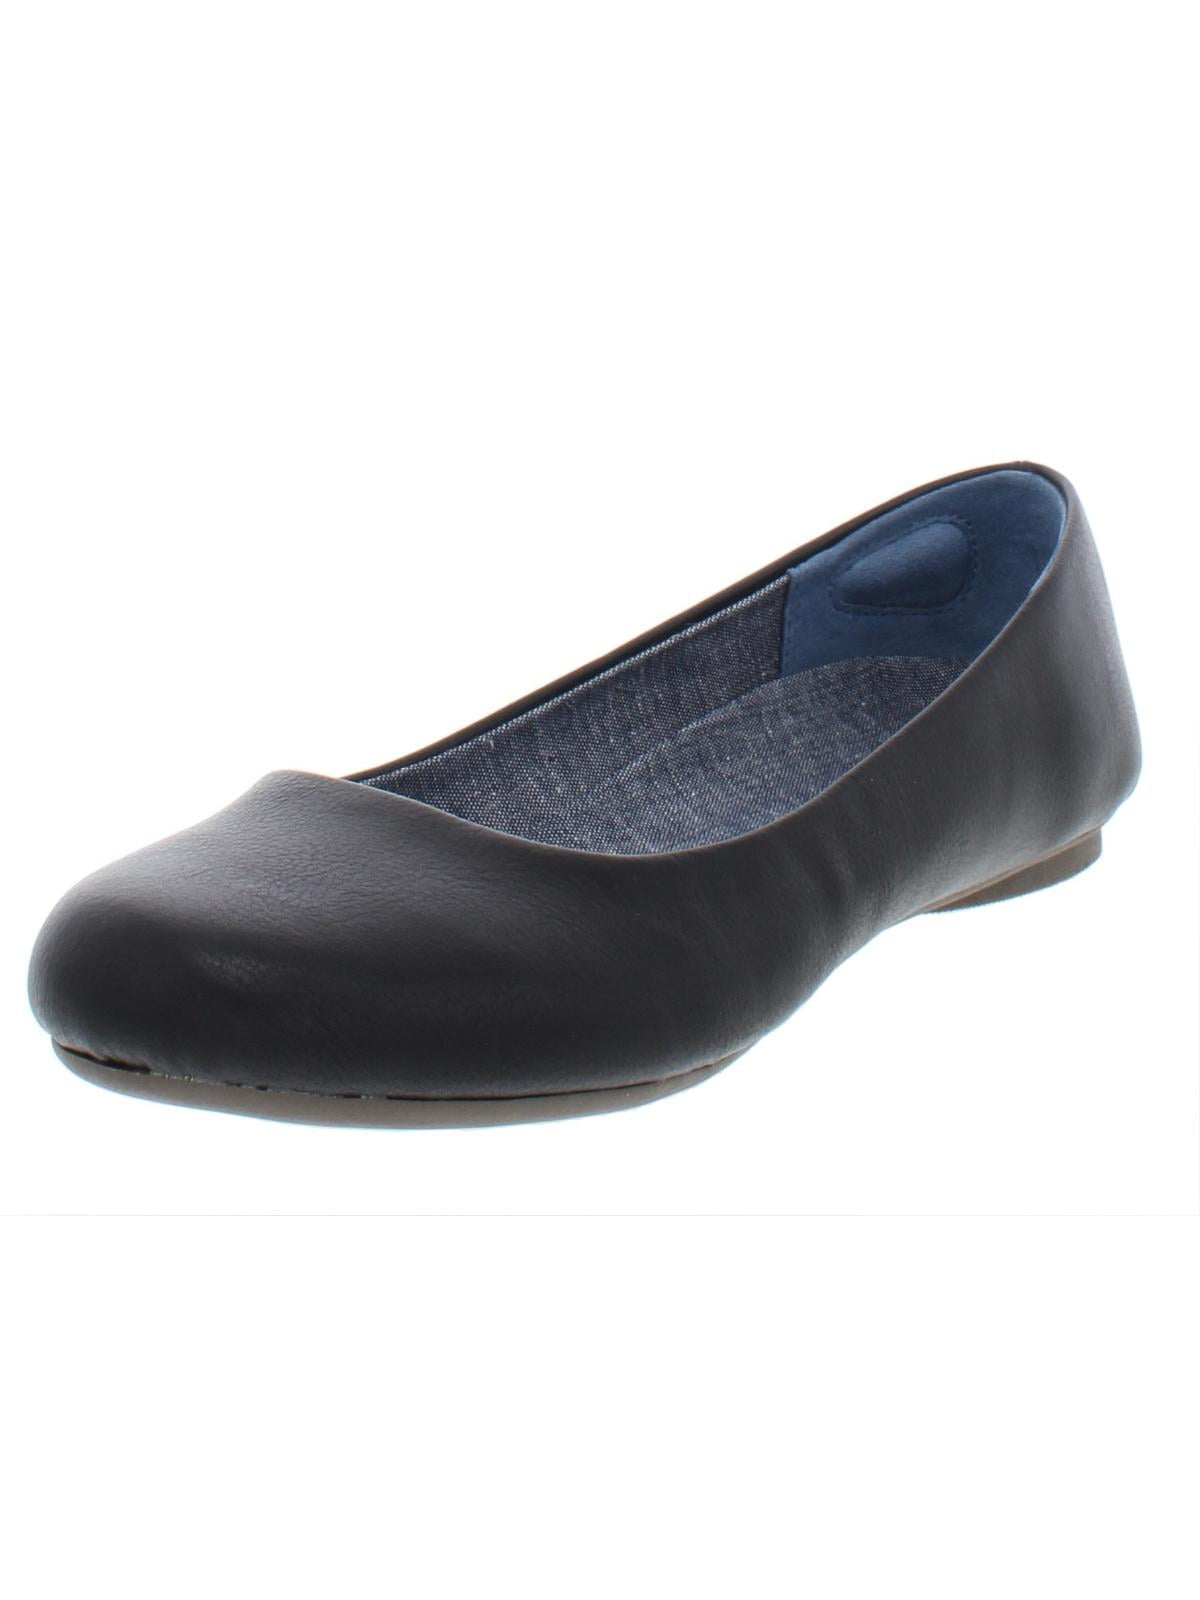 Scholl's Shoes Women's Giorgie Ballet Flat Dr 